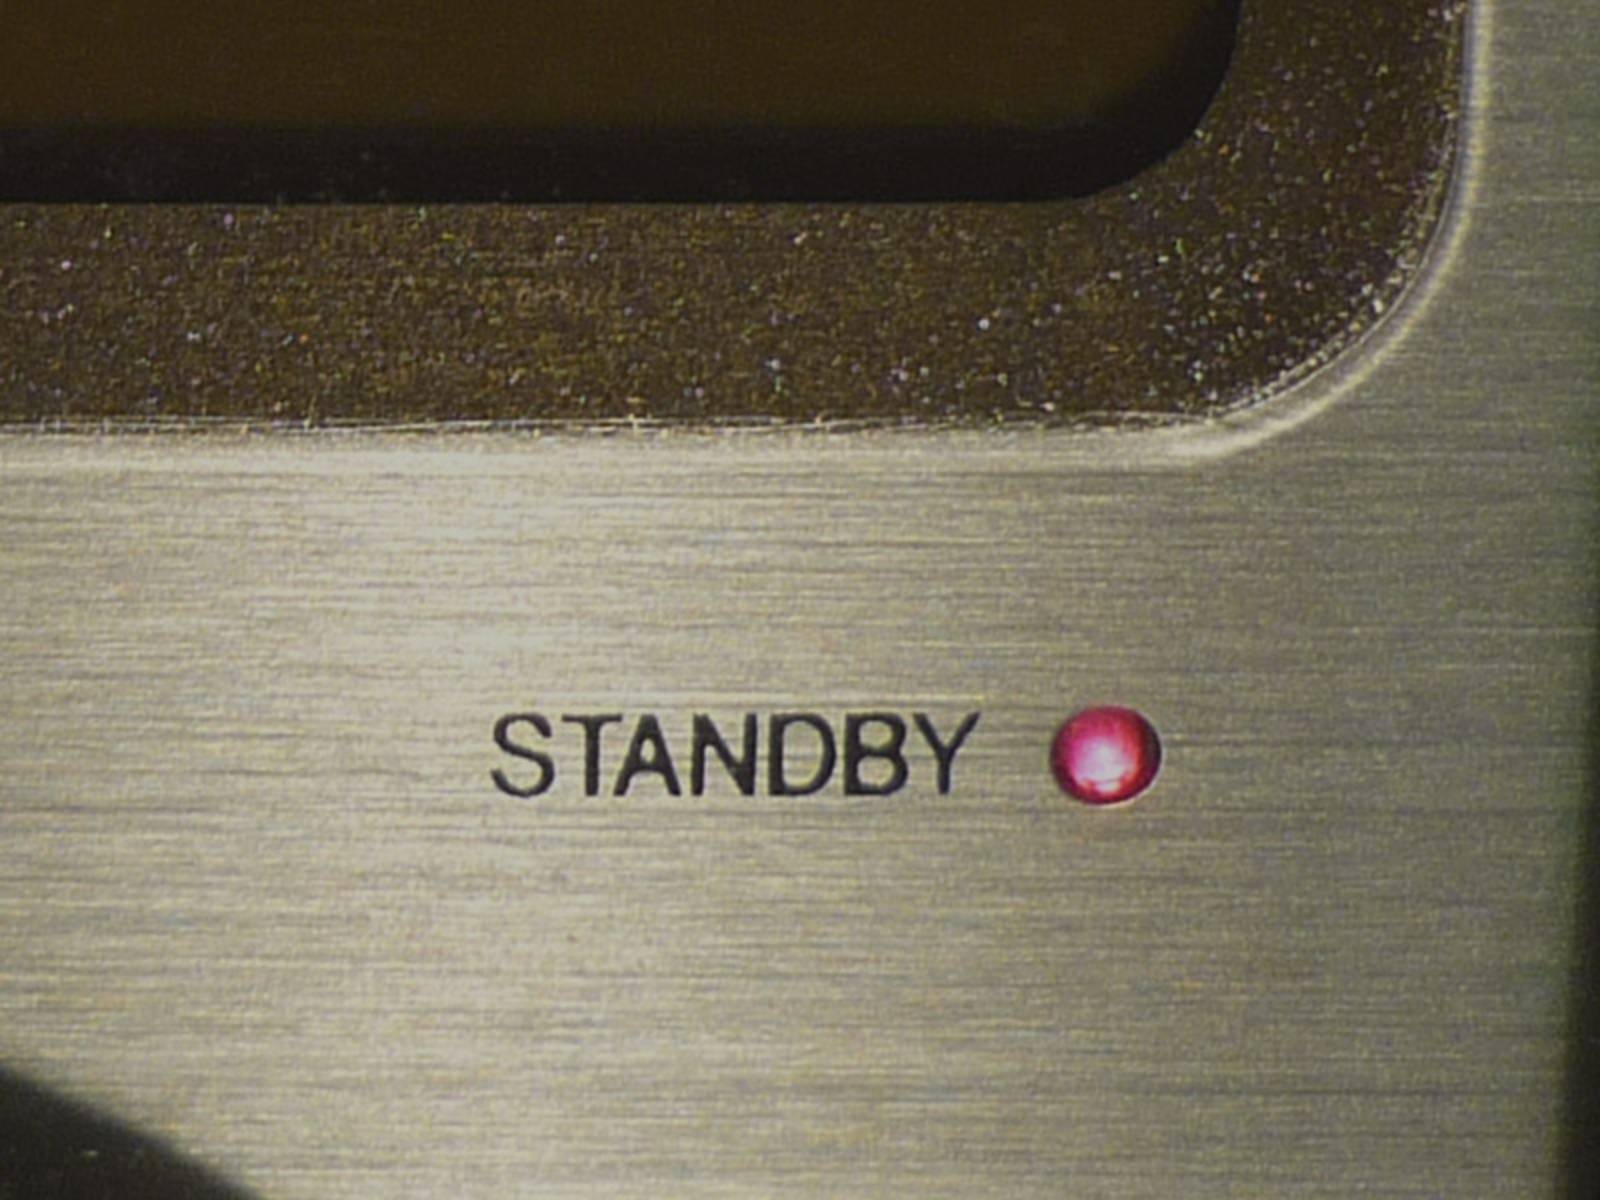 Rote Leuchte am CD-Player signalisiert Standby-Stromverlust.